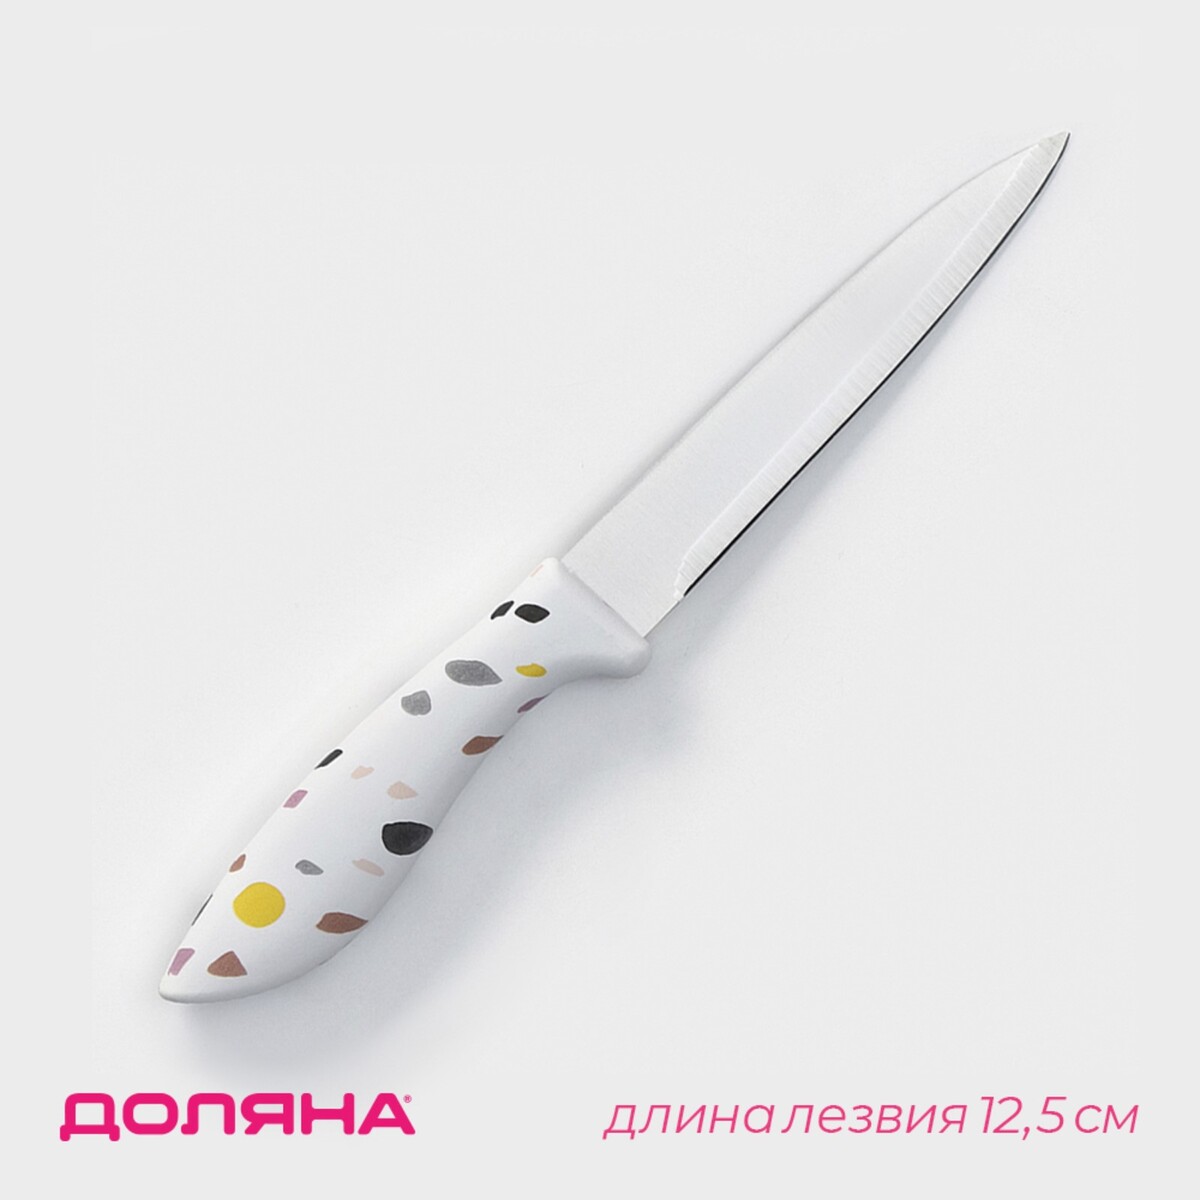 Нож кухонный универсальный доляна sparkle, лезвие 12,5 см, цвет белый нож кухонный универсальный доляна sparkle лезвие 12 5 см белый